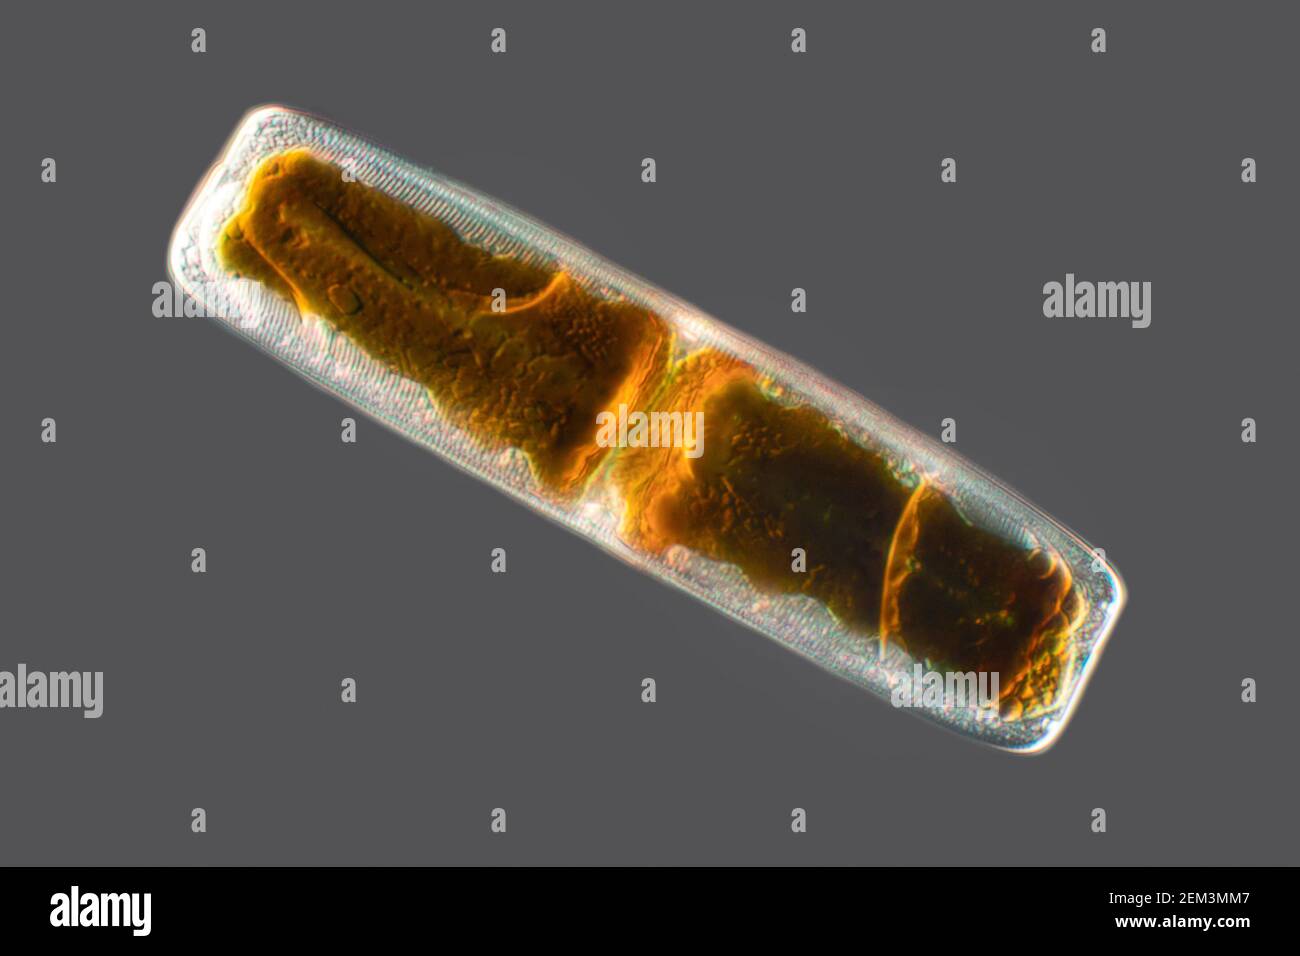 Diatomee (Diatomeae), diatomee dal Mar Mediterraneo, immagine di contrasto con interferenza differenziale, ingrandimento x200 relativo a 35 mm Foto Stock